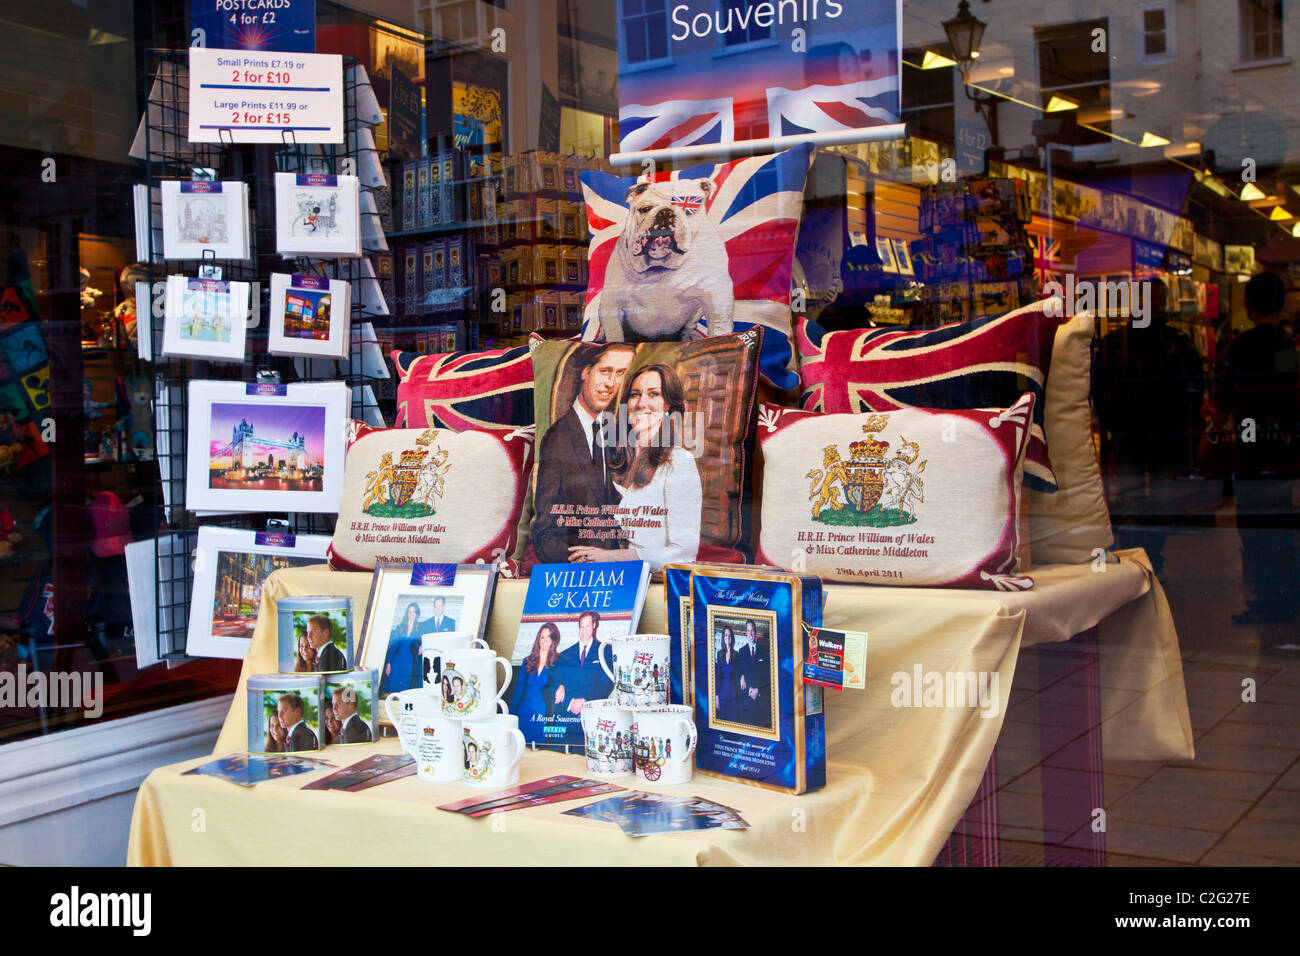 Affichage du mariage royal, William et Kate, souvenirs,souvenirs et cadeaux dans une boutique ou vitrine à Windsor, England, UK Banque D'Images